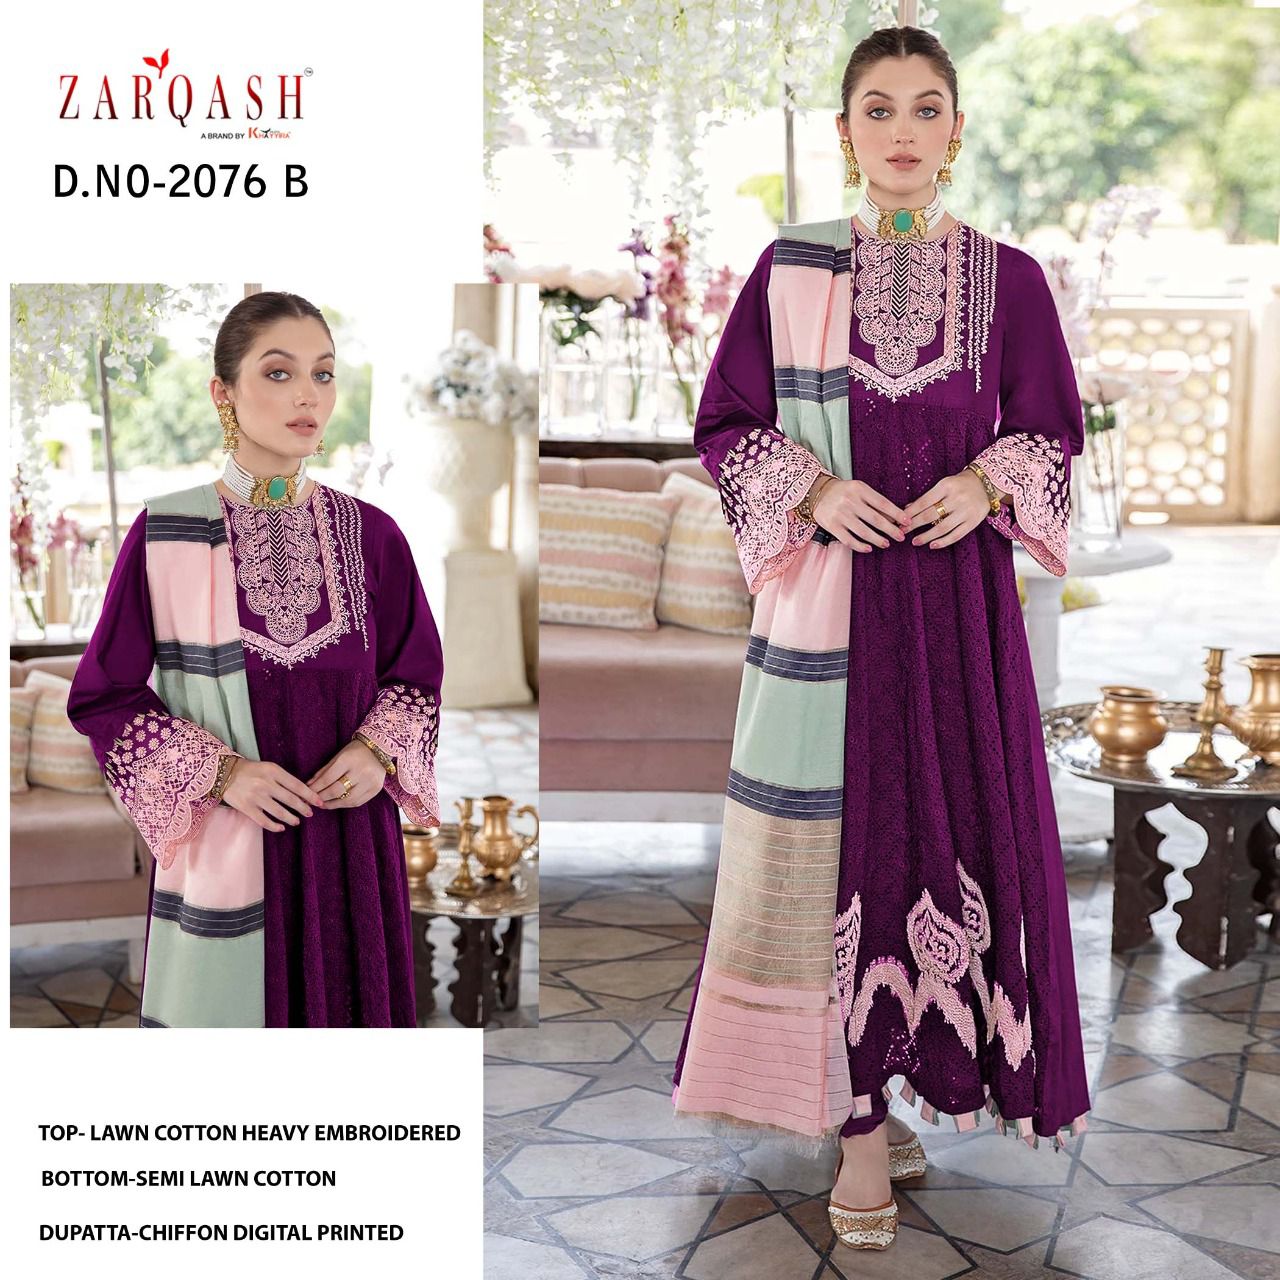 Zarqash Noor Jahan 2076-B